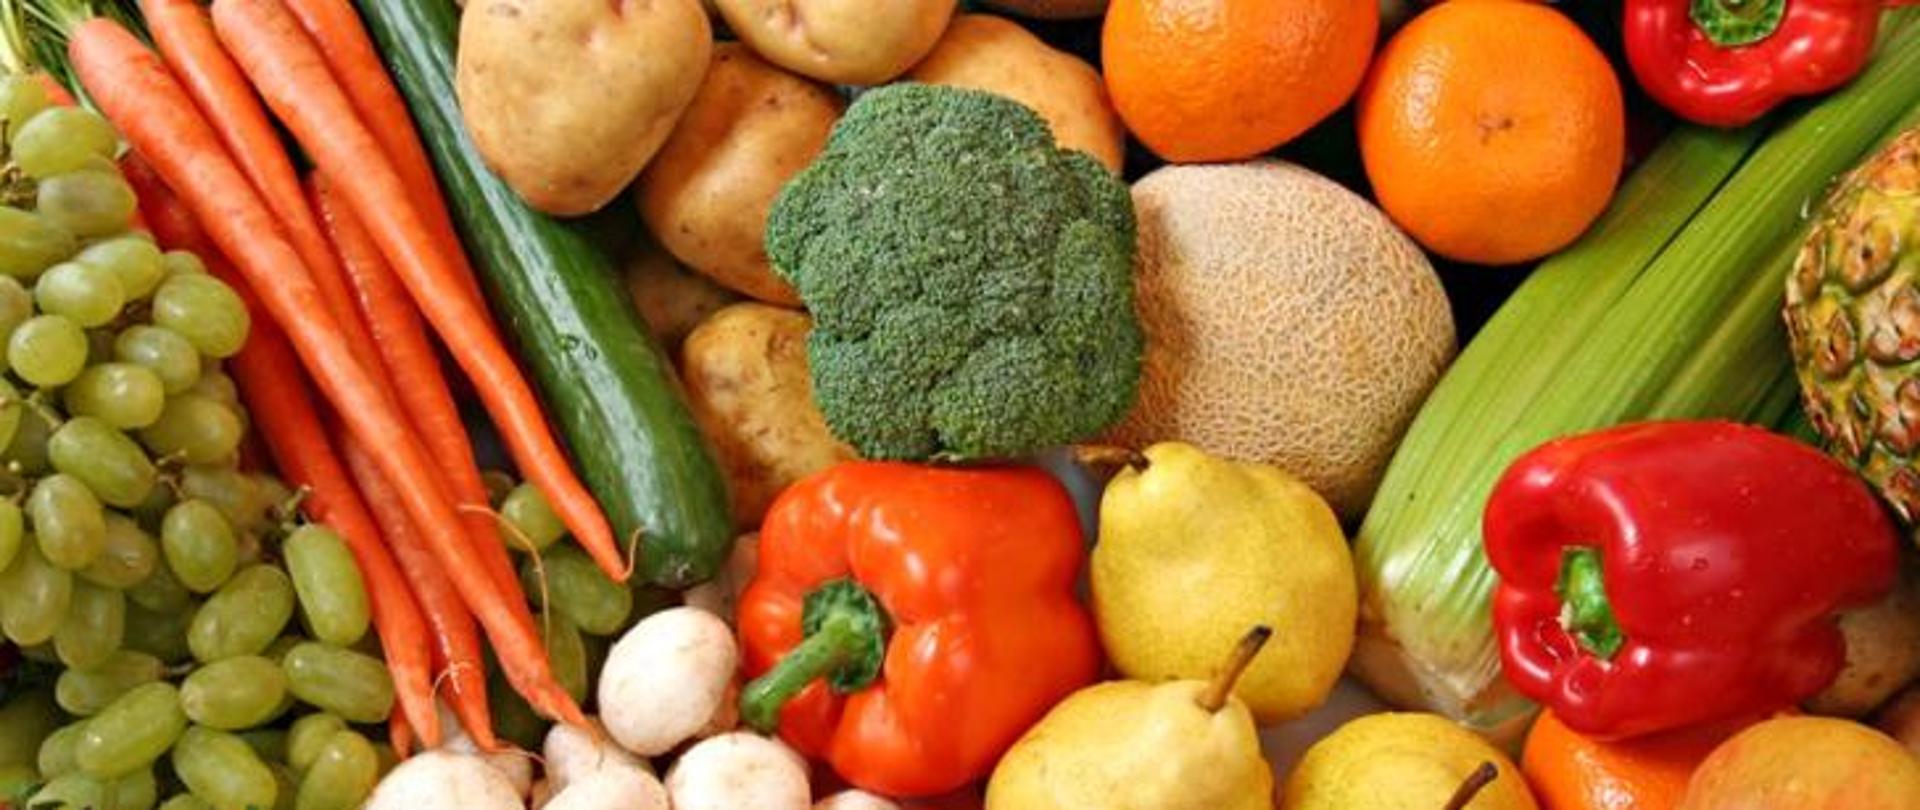 Obraz przedstawia wiele warzyw i owoców m.in.: czerwoną paprykę, brokuła, ziemniaki, ogórka, pieczarki, gruszki, winogrona i mandarynki